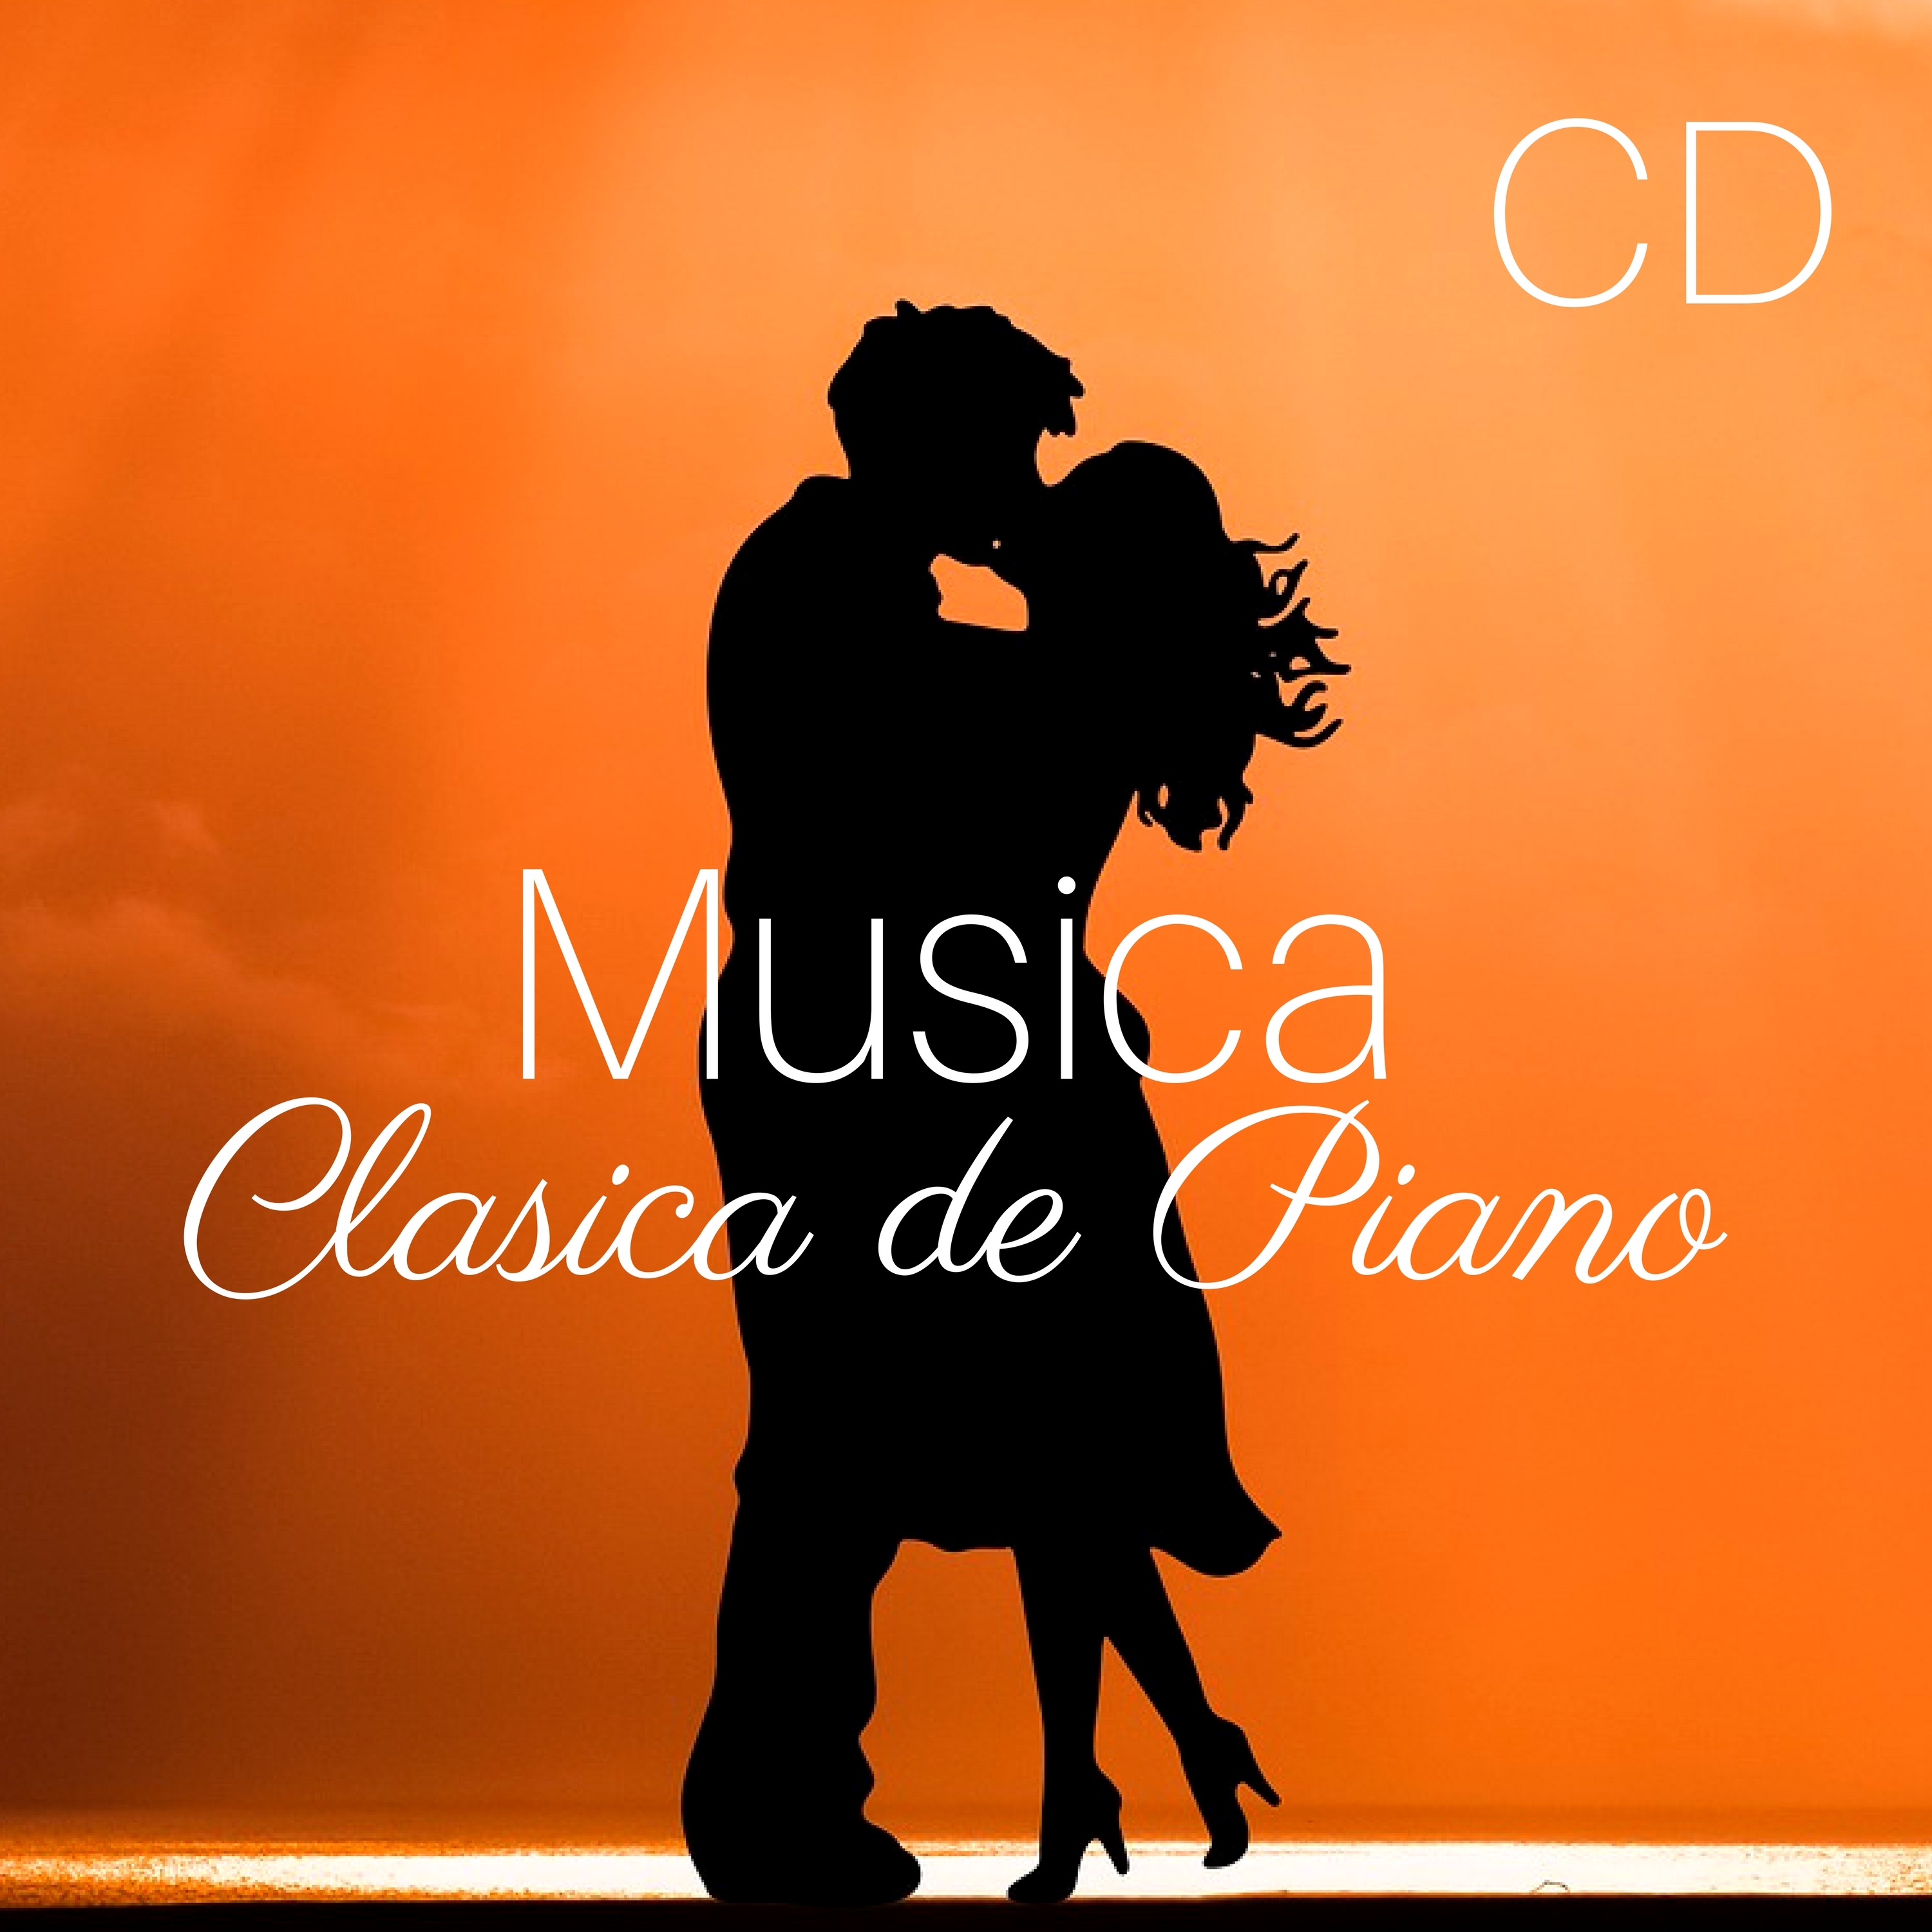 Musica Clasica CD de Piano  Coleccion Espa ola